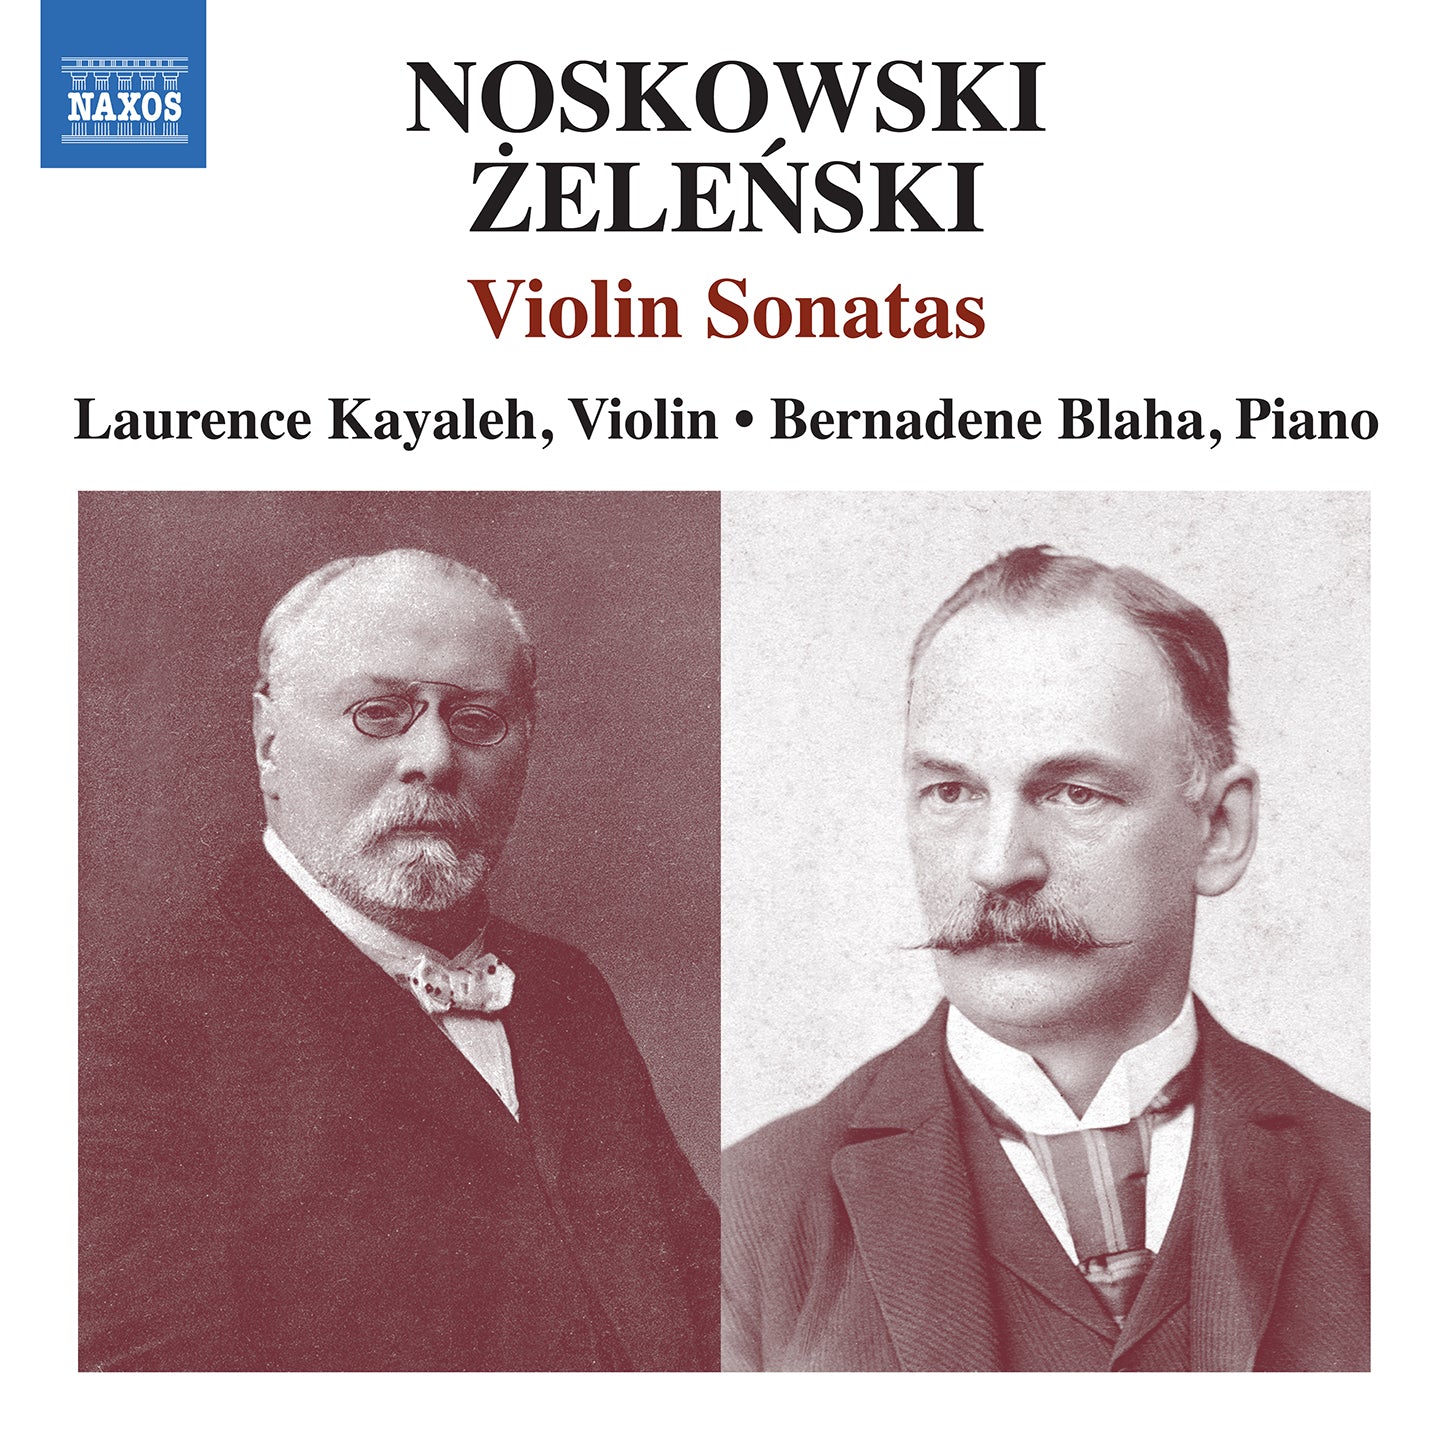 Noskowski & Zelenski: Violin Sonatas / Kayaleh, Blaha